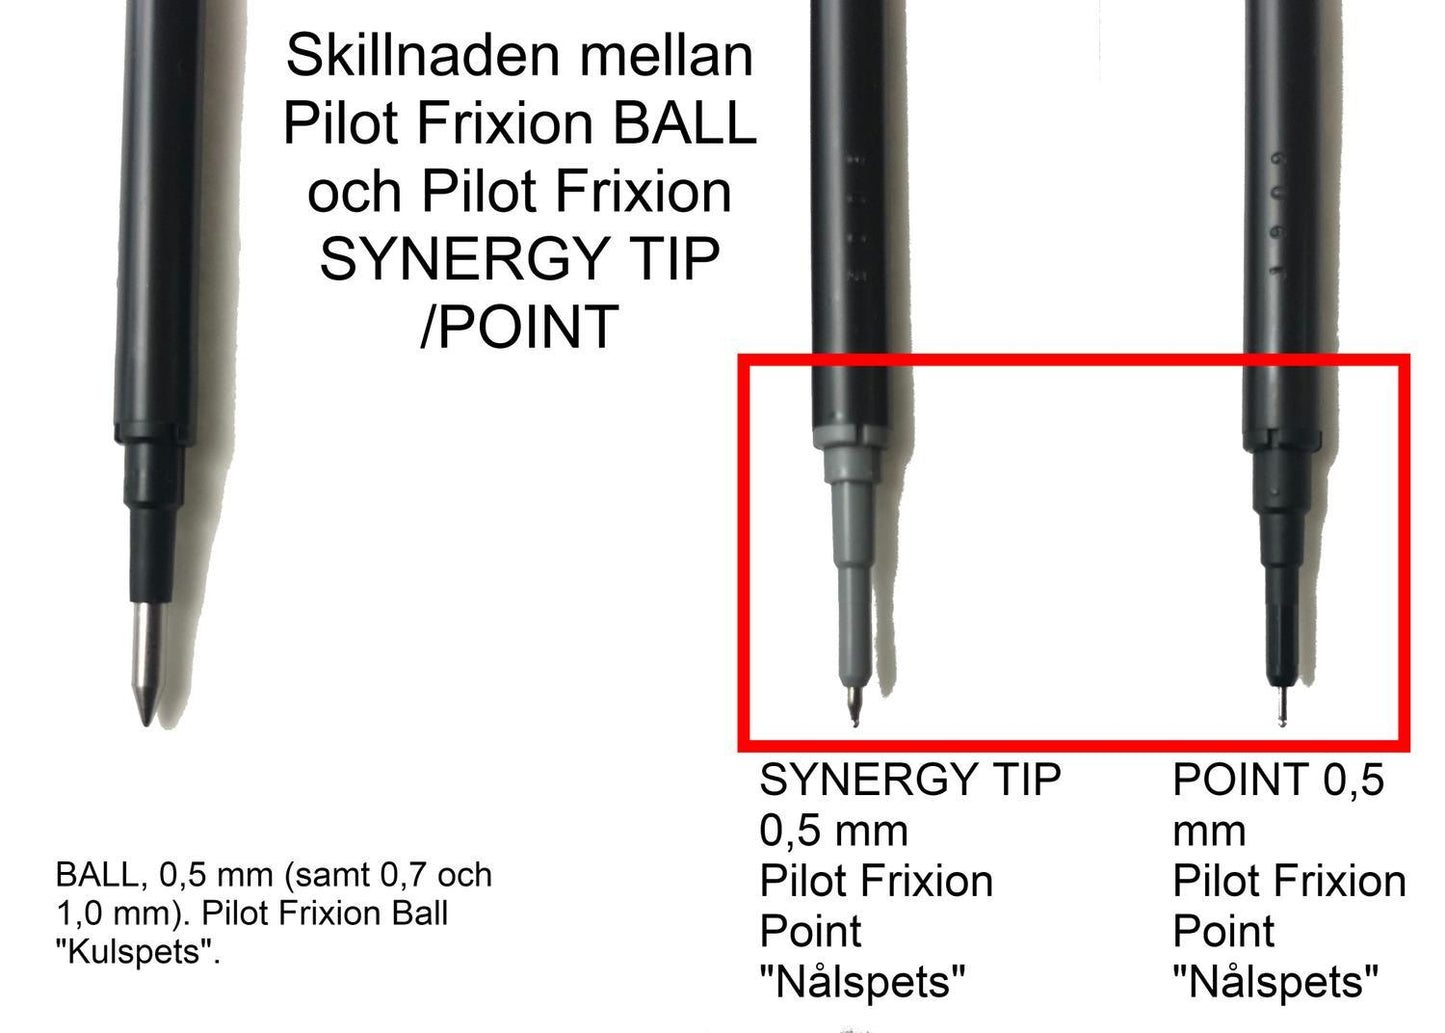 Rollerballpenna Pilot Frixion POINT Clicker BLRT-FRP5, 0,5mm (Synergy Tip), raderbart bläck, 4 färger/fp (Svart, Blå, Röd och Blå-Svart)